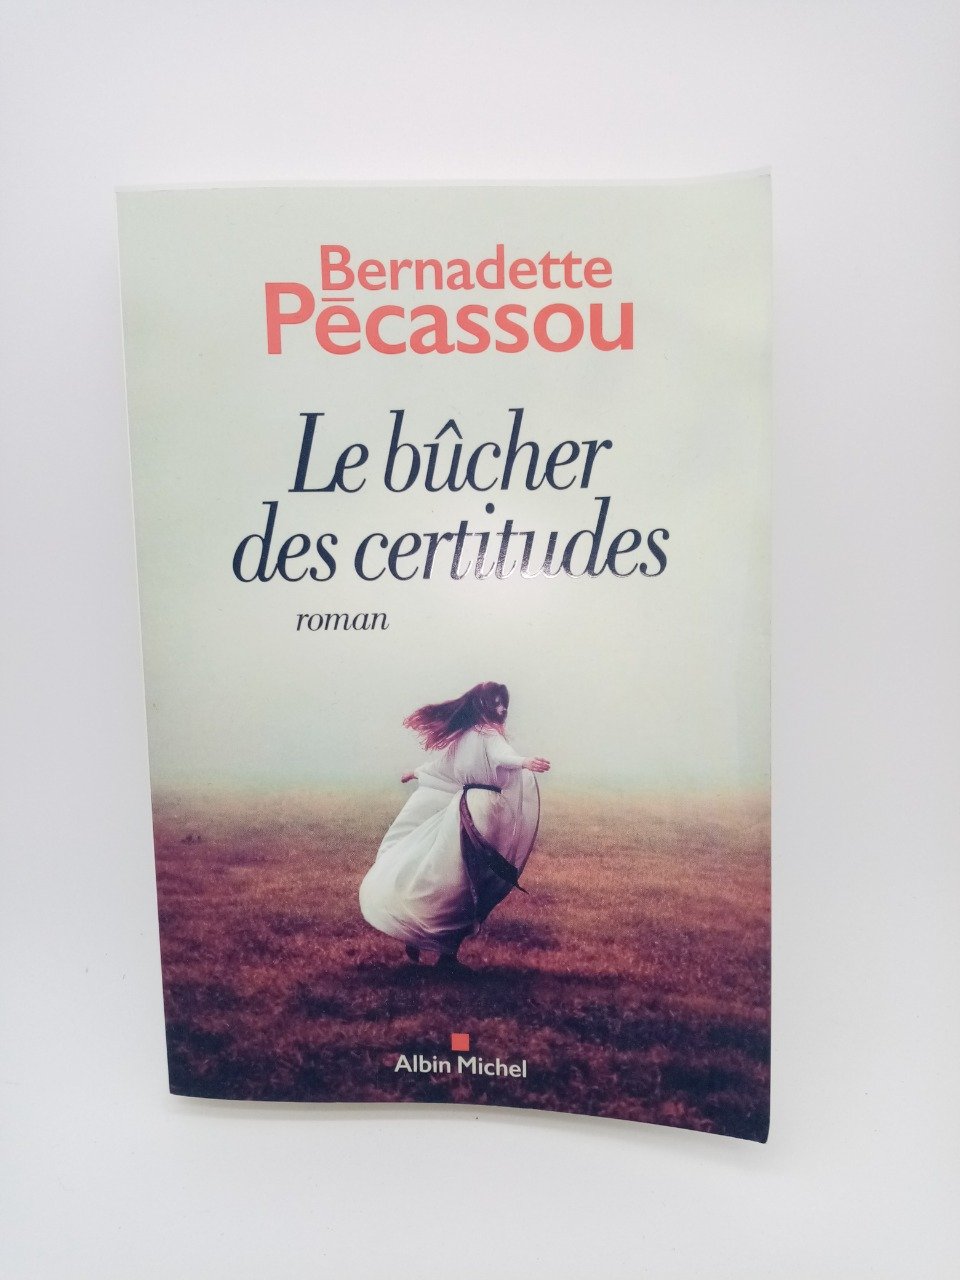 Bernadette Pécassou, Le bûcher des certitudes